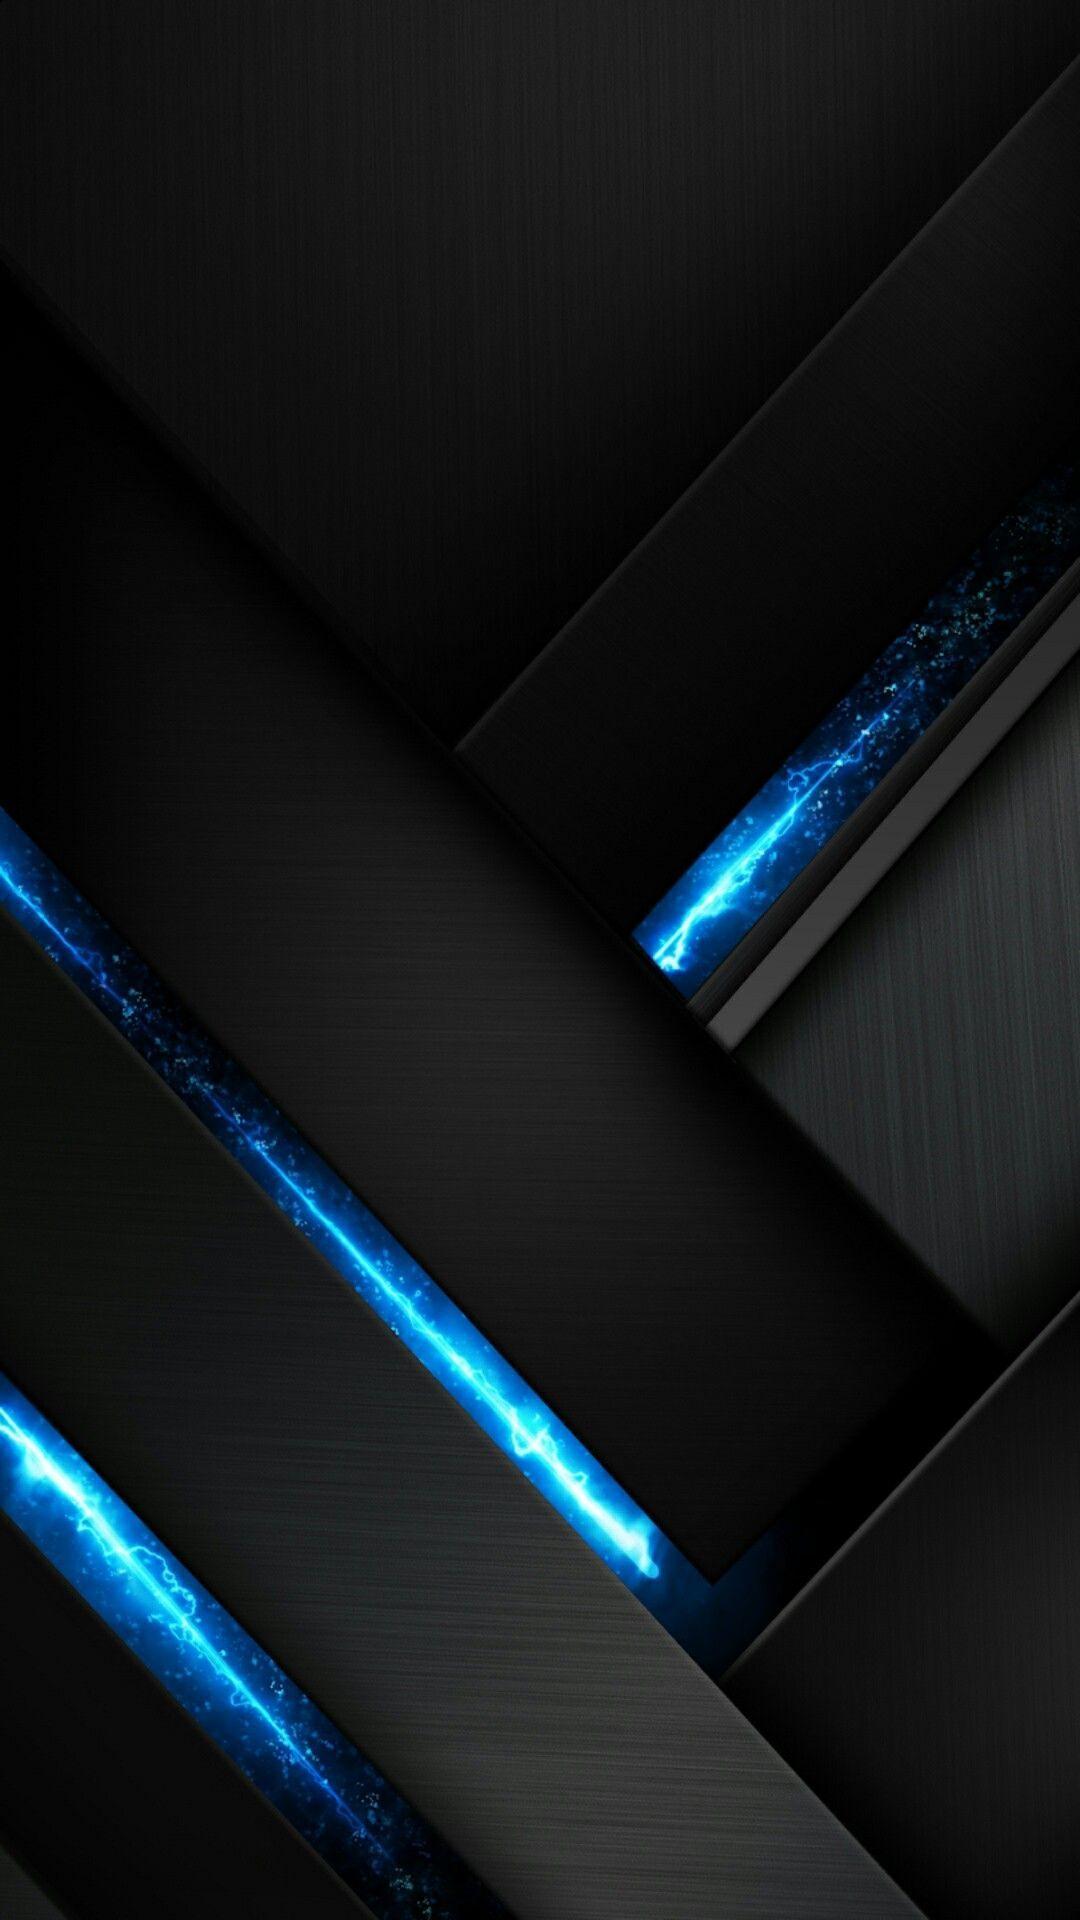 Black and Blue Phone Wallpapers - Top Những Hình Ảnh Đẹp